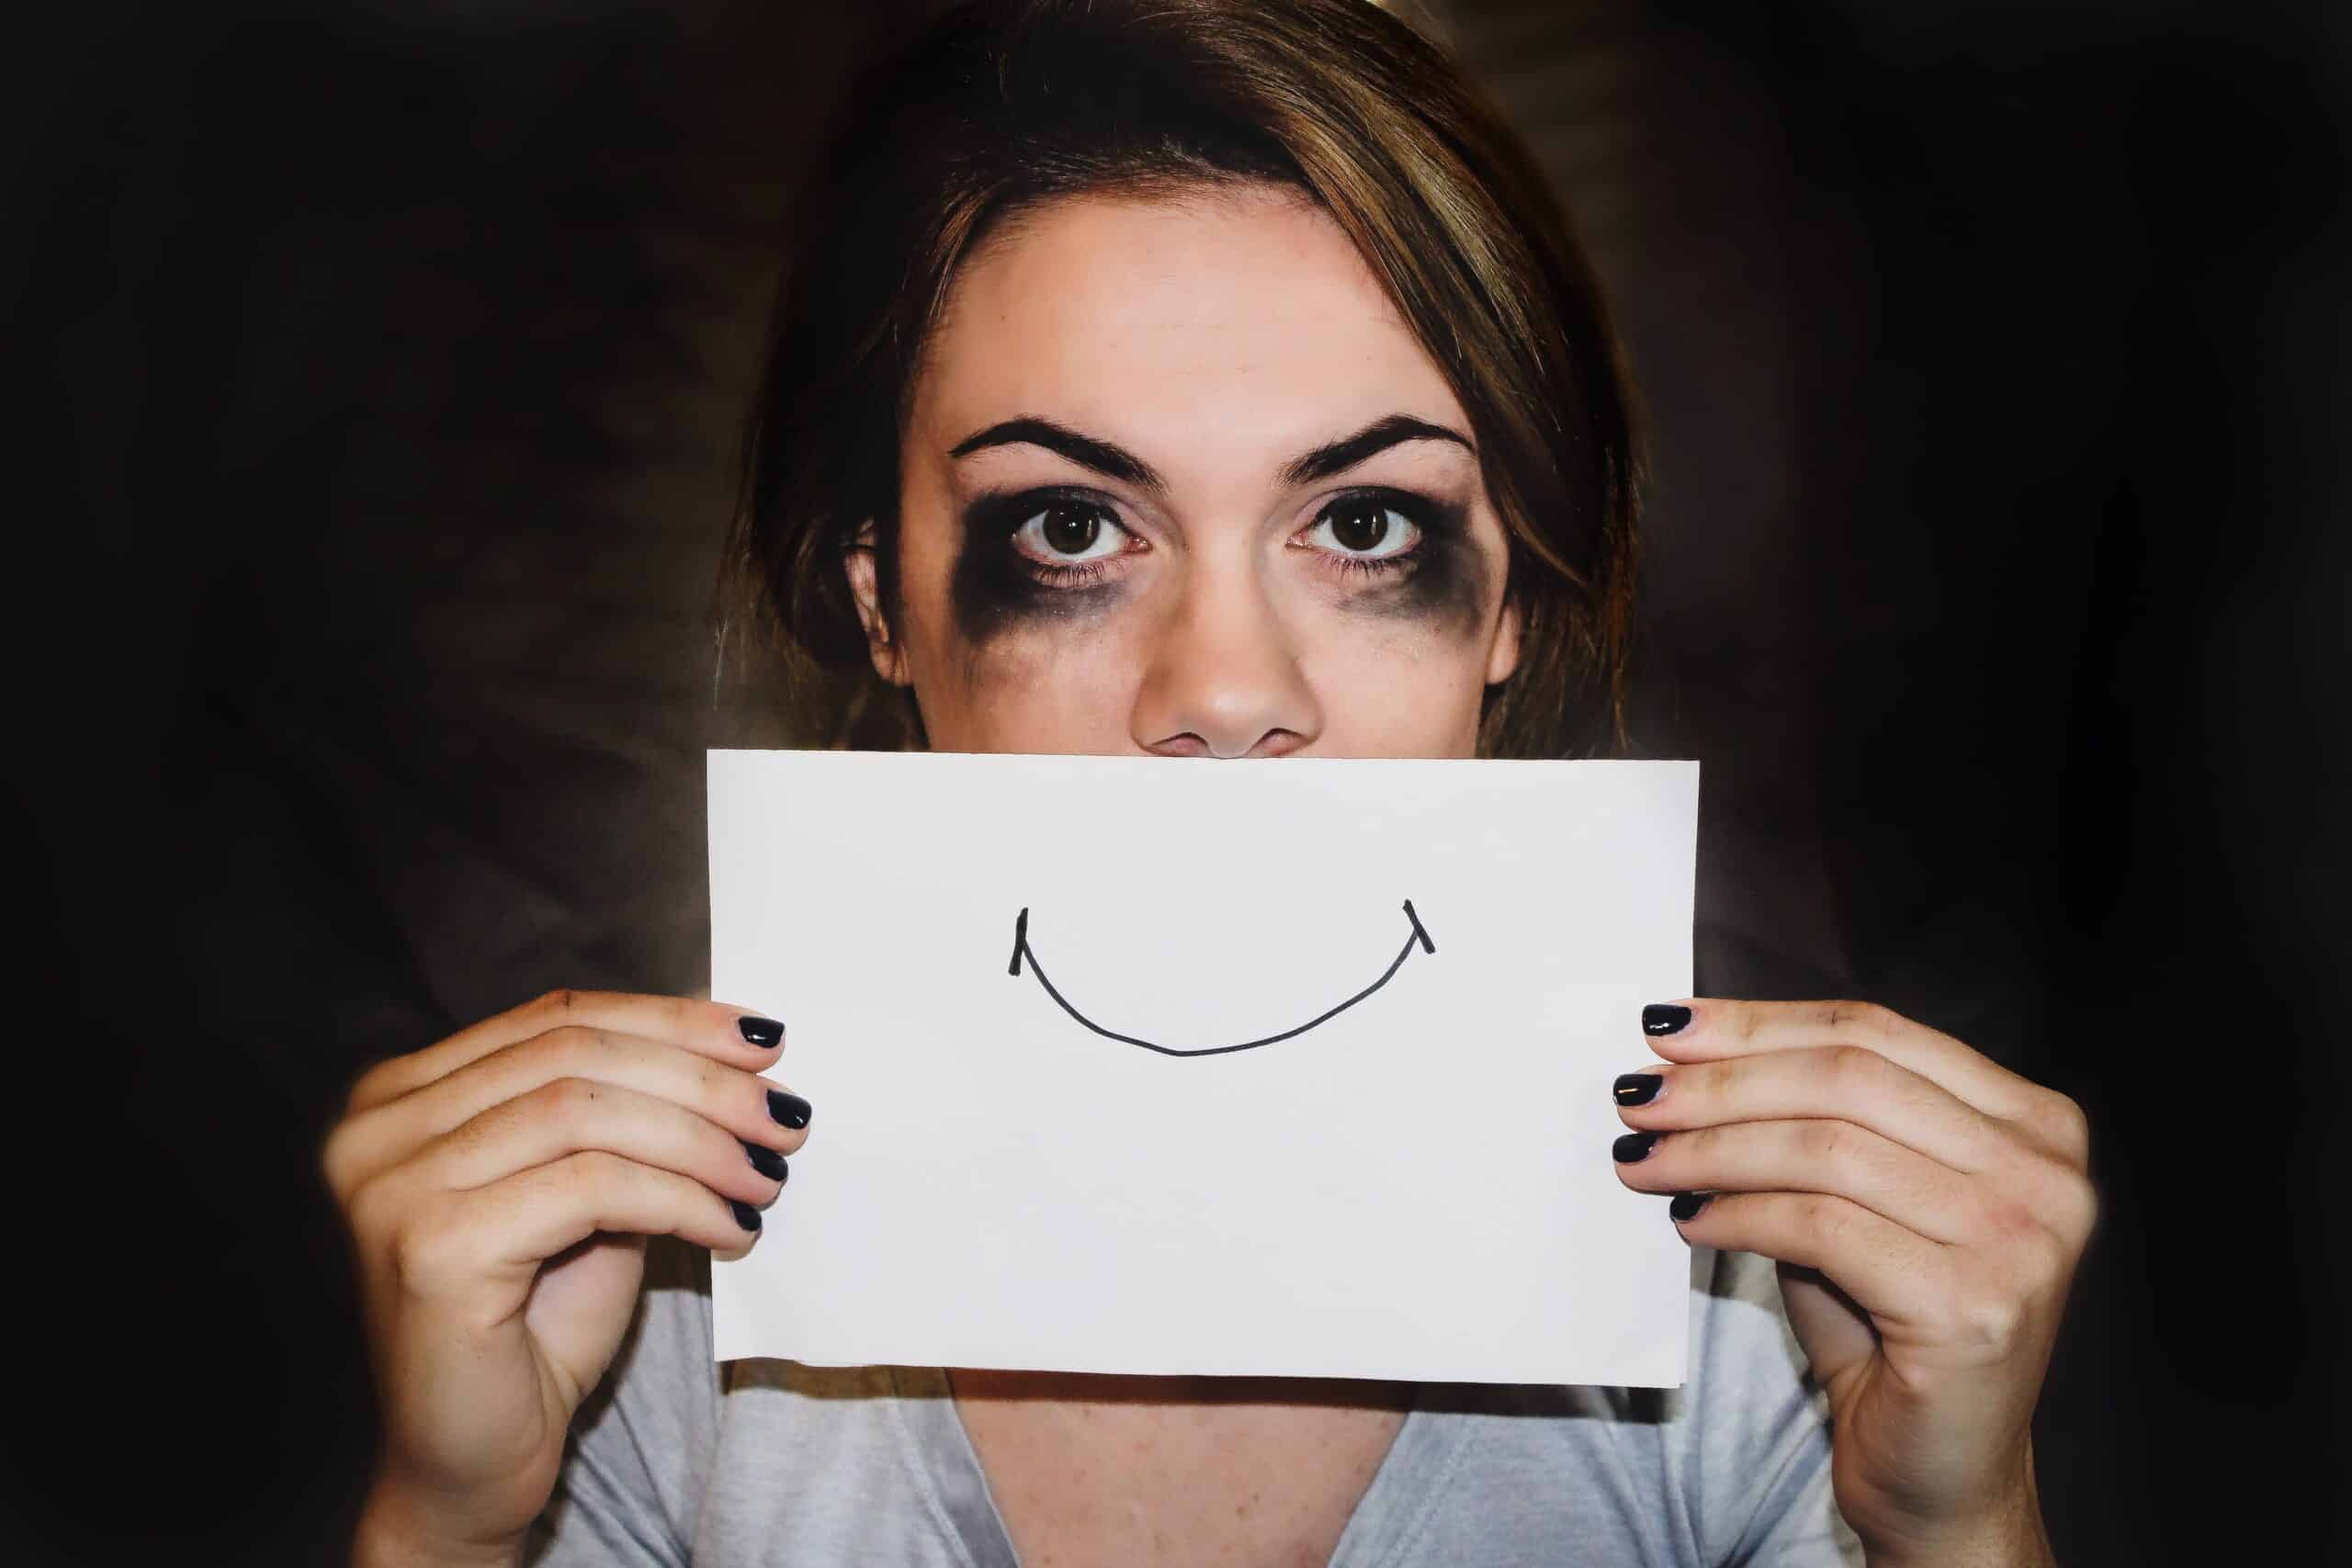 Teste de Ansiedade e Estresse: avalie seus sentimentos e emoções